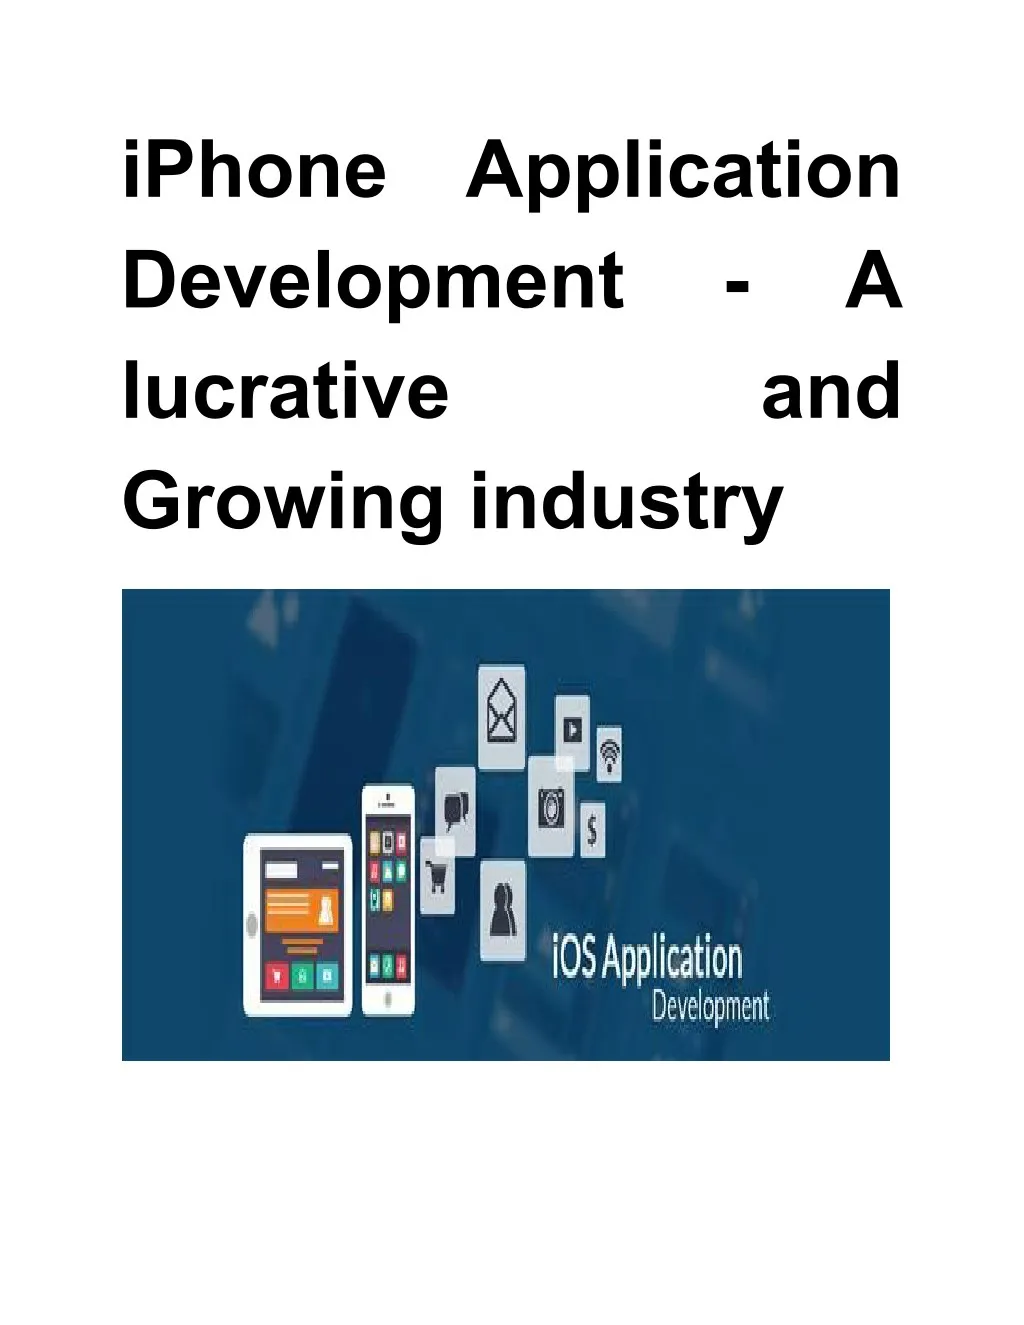 iphone development lucrative growing industry